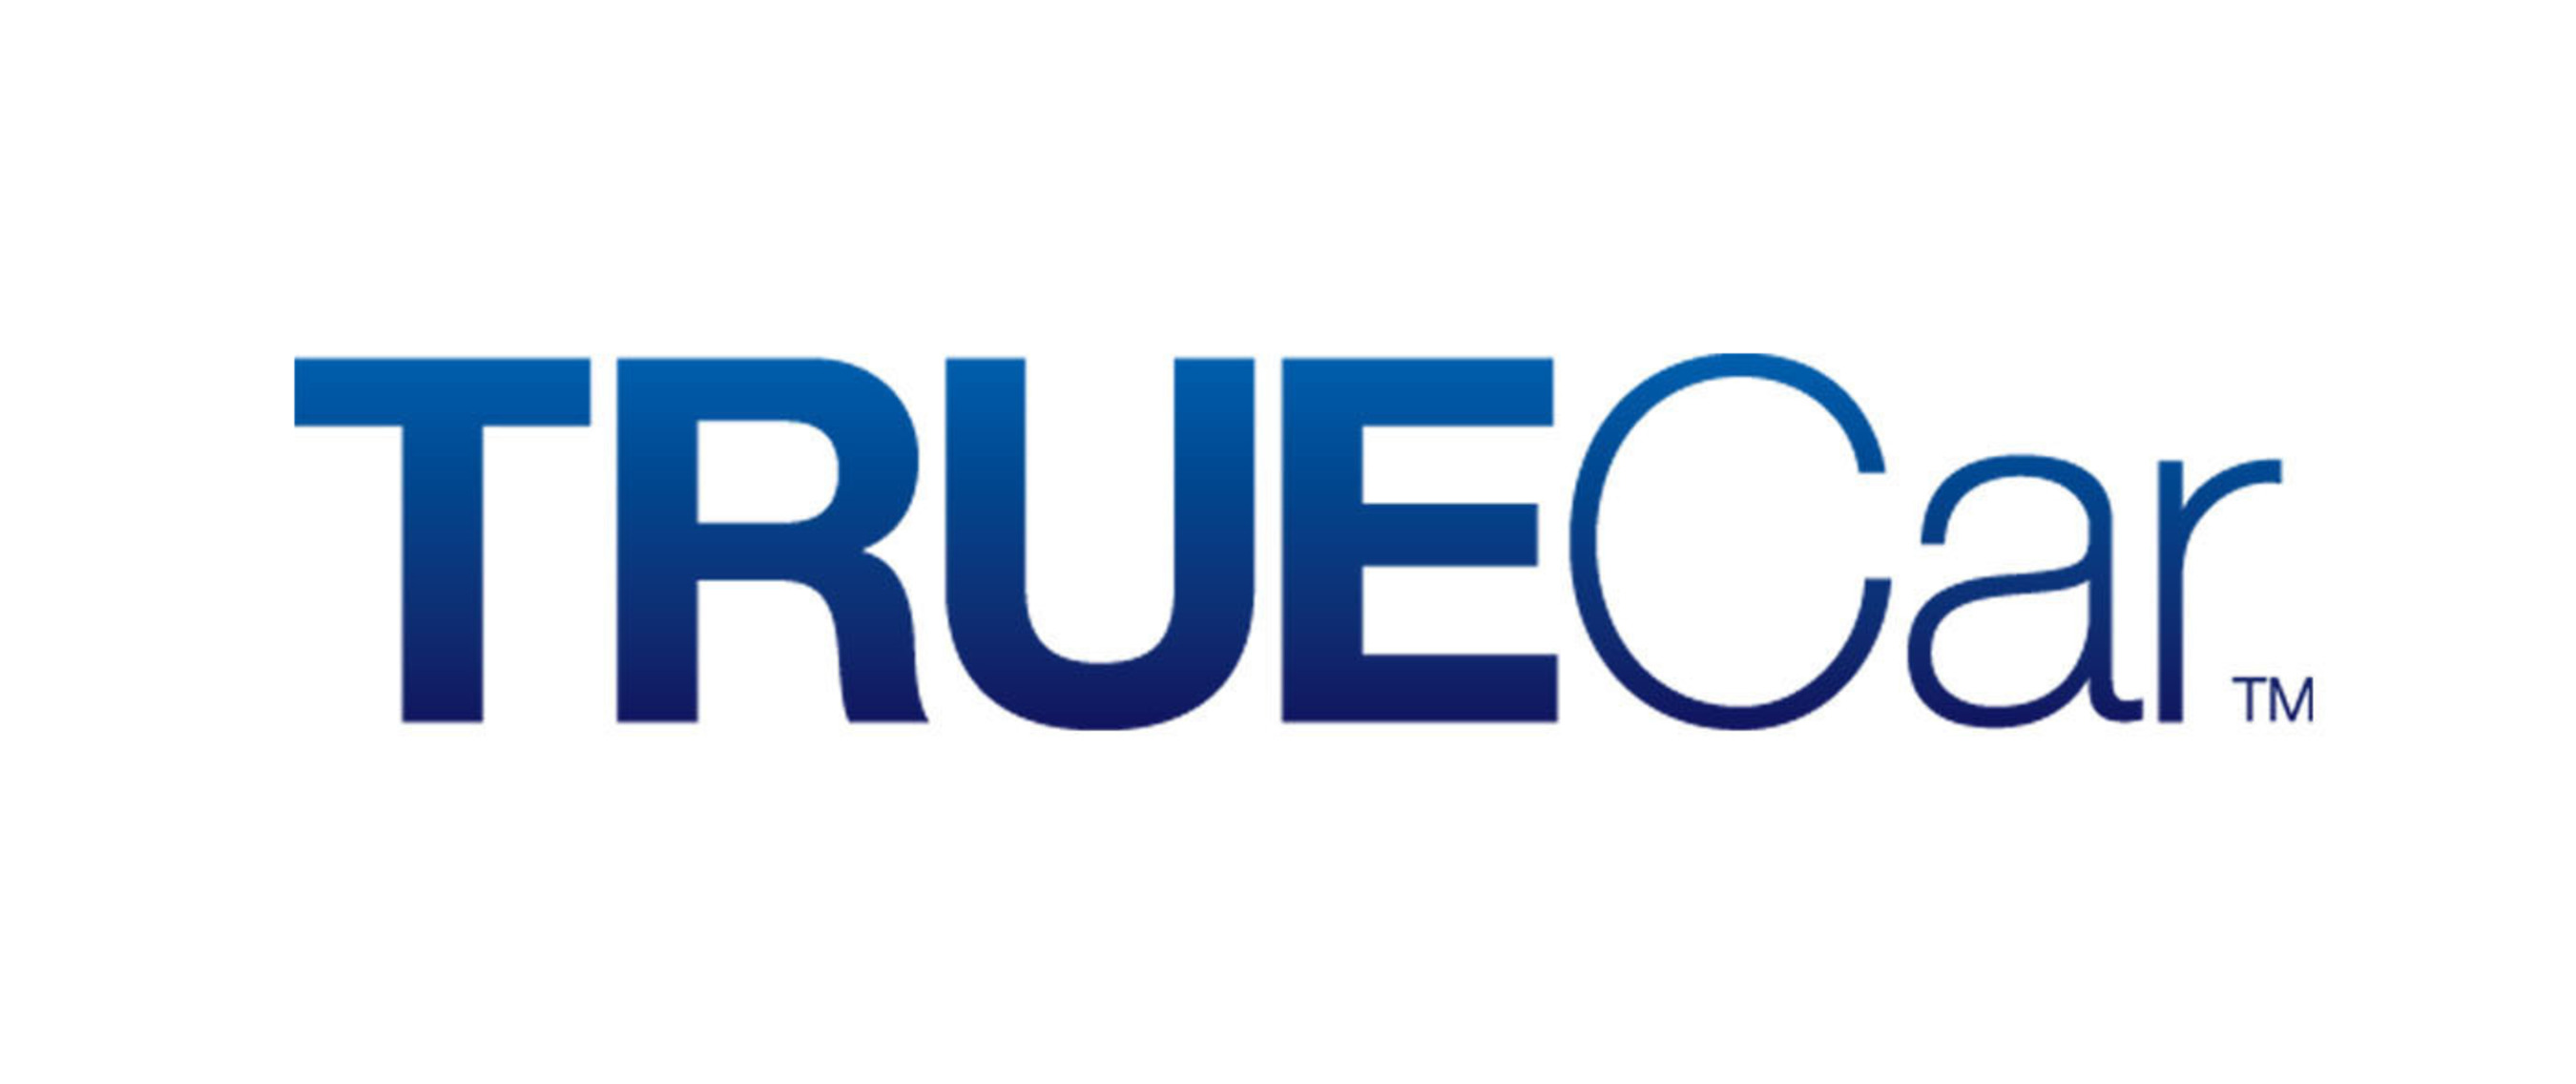 TrueCar Logo. (PRNewsFoto/TrueCar.com) (PRNewsFoto/)